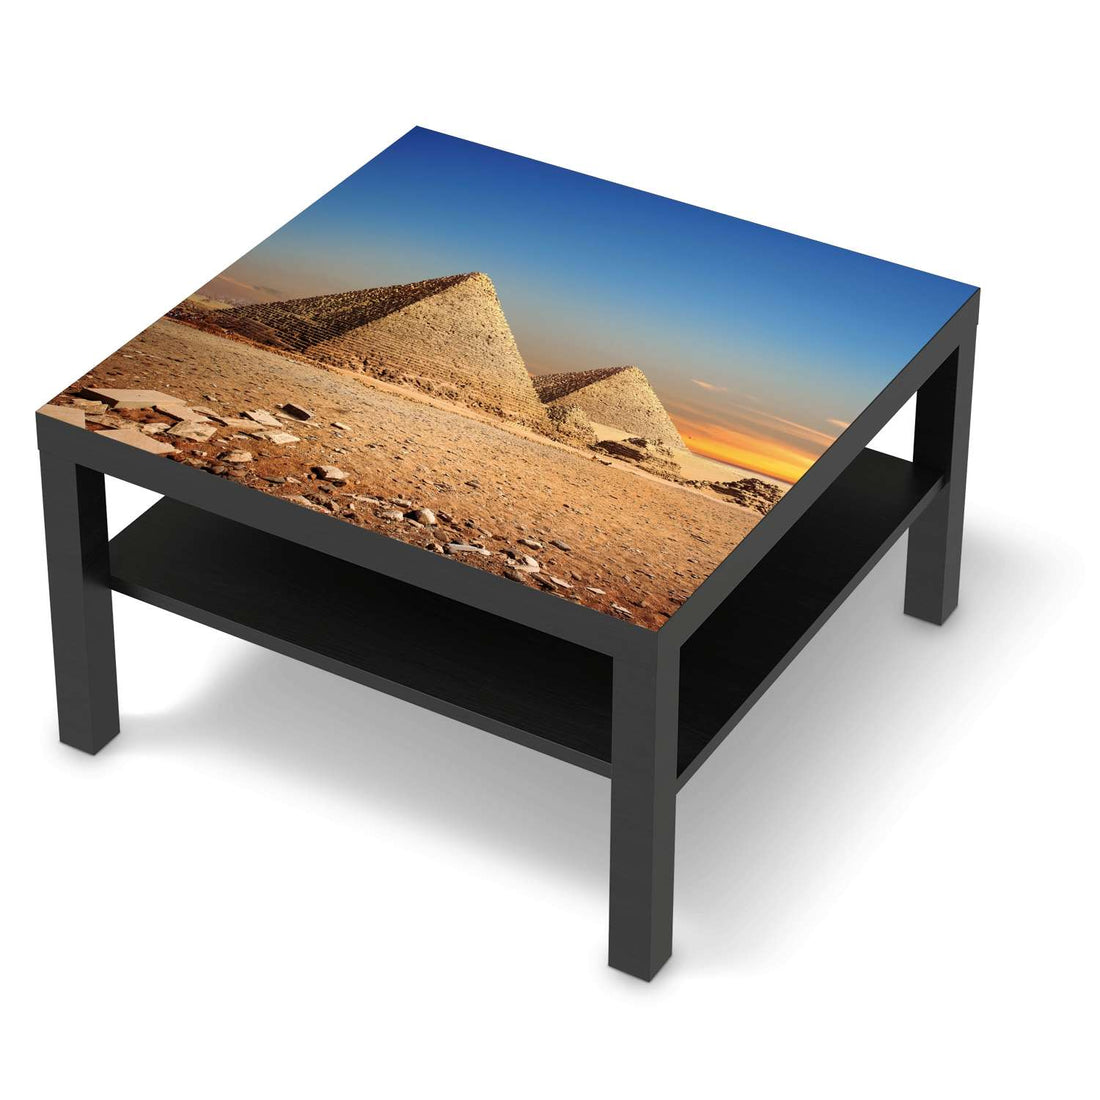 Selbstklebende Folie Pyramids - IKEA Lack Tisch 78x78 cm - schwarz